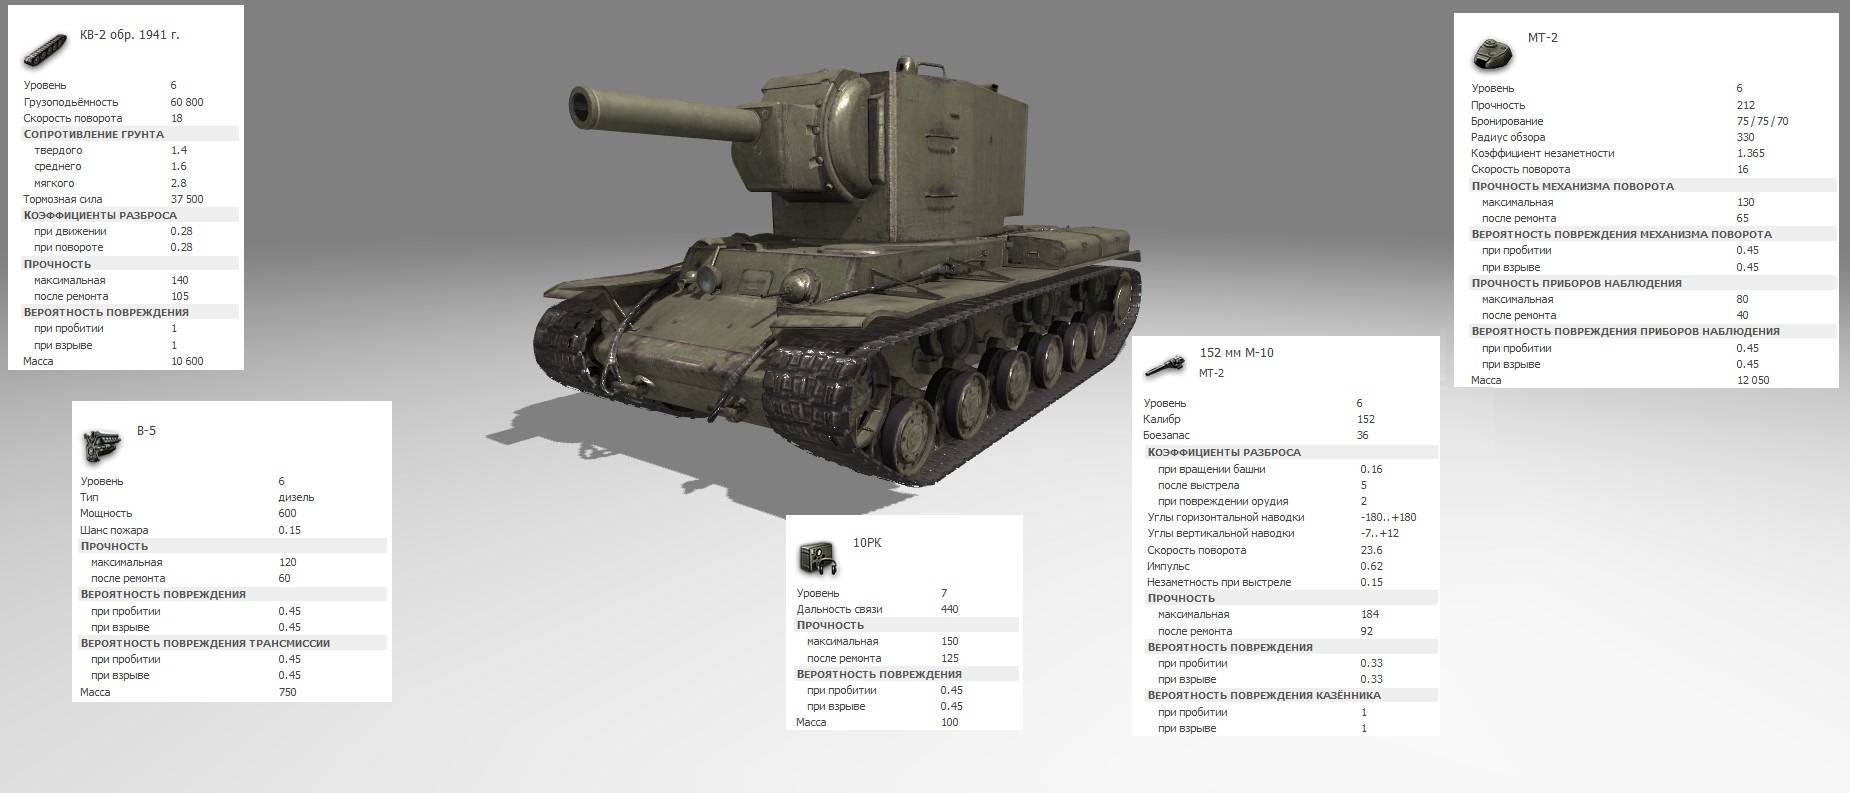 КВ-2 – хороший танк, не оказавший никакого влияния на ход второй мировой войны